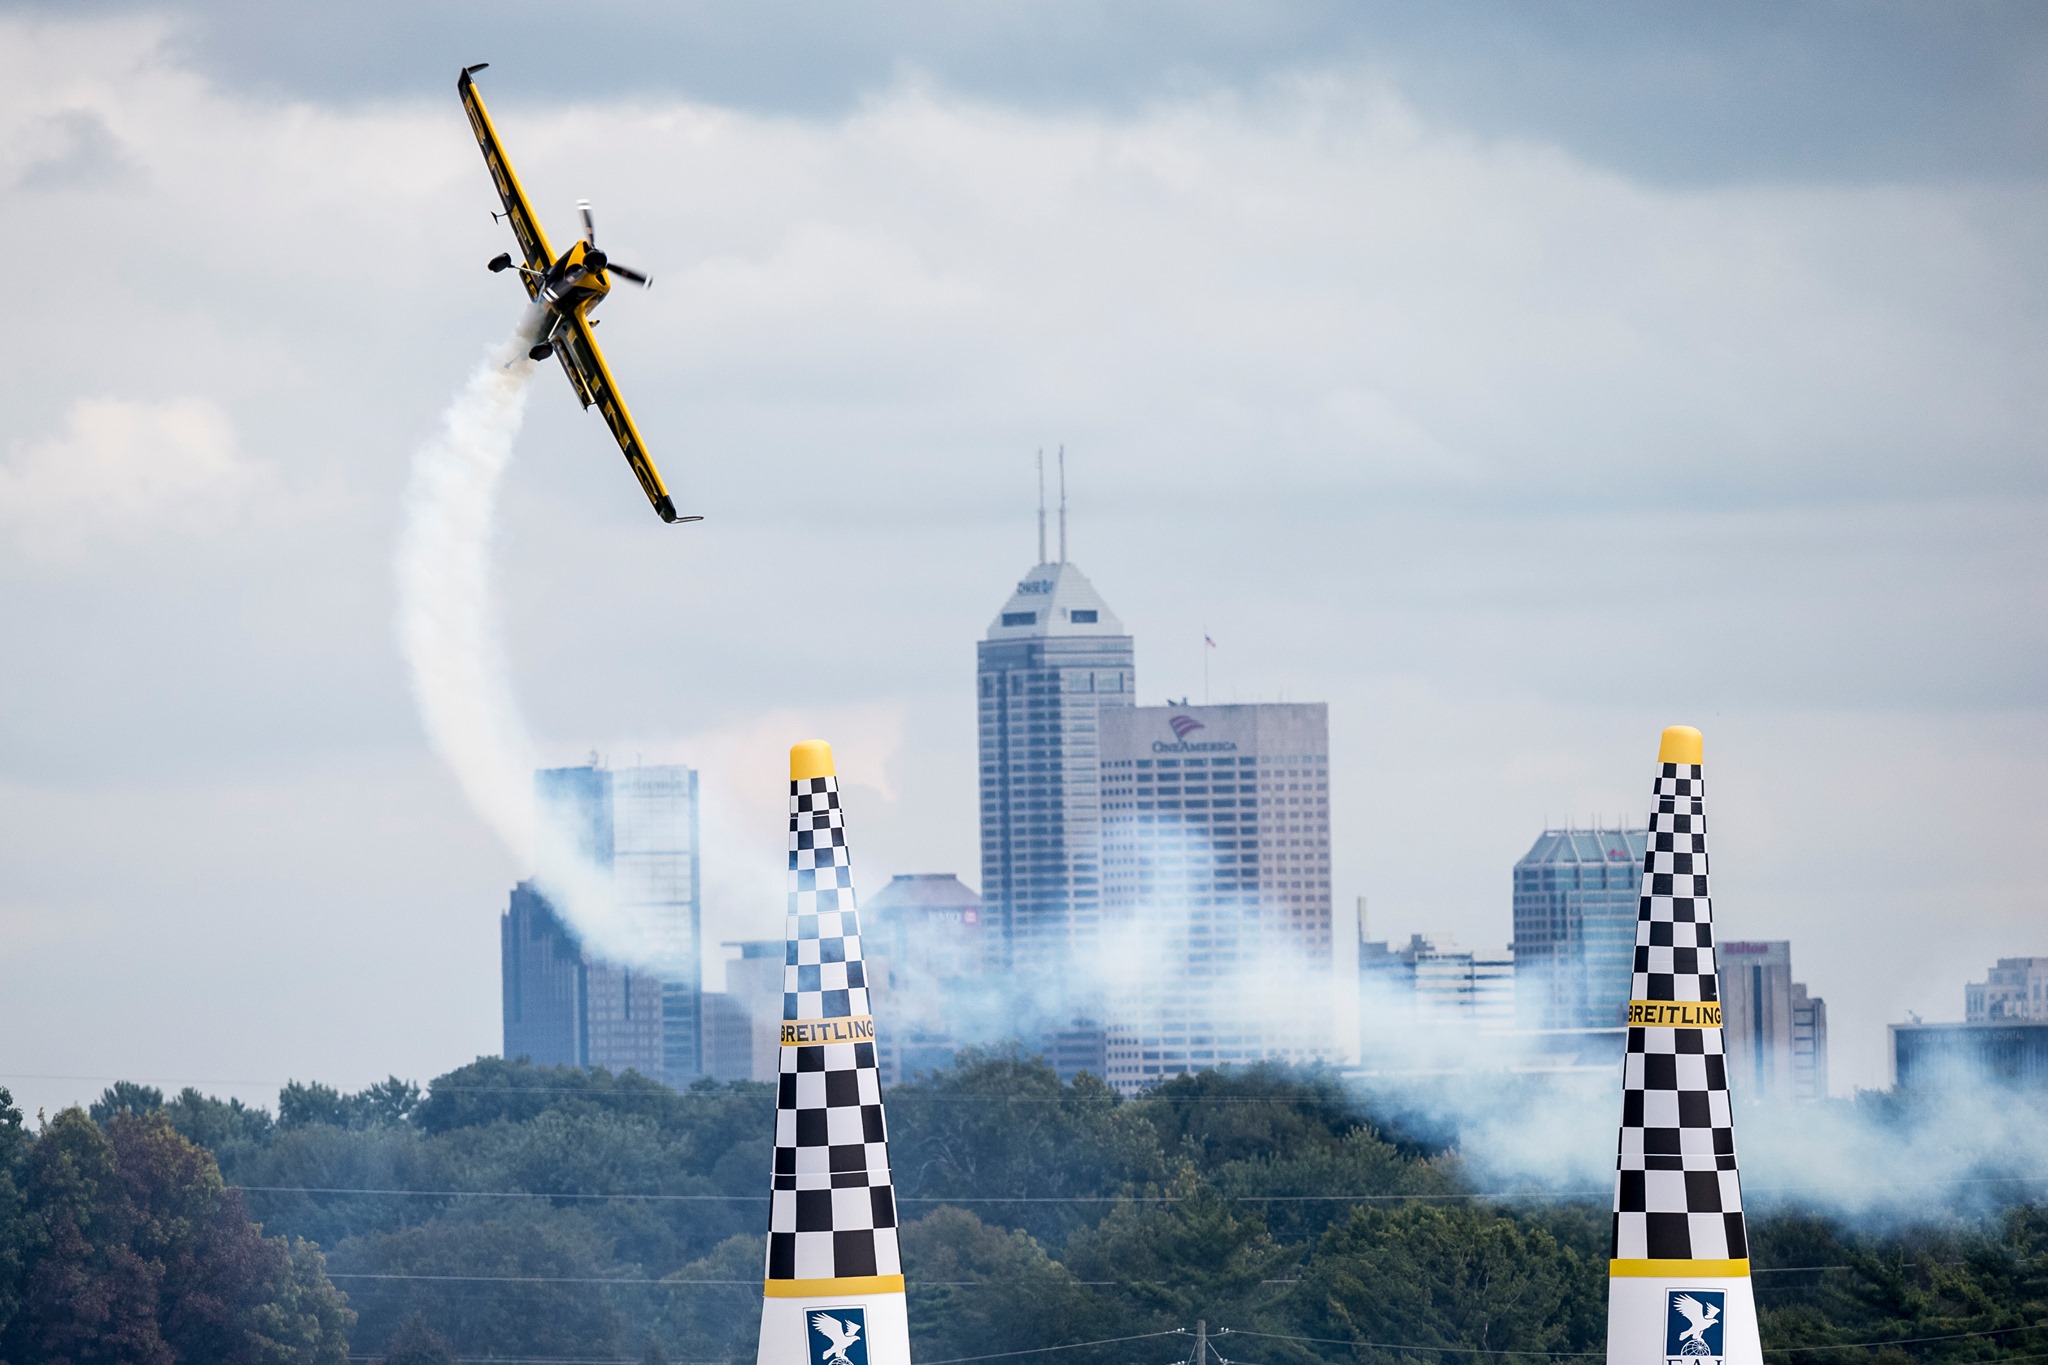 Air Race World Championship v roce 2022 neuvidíme